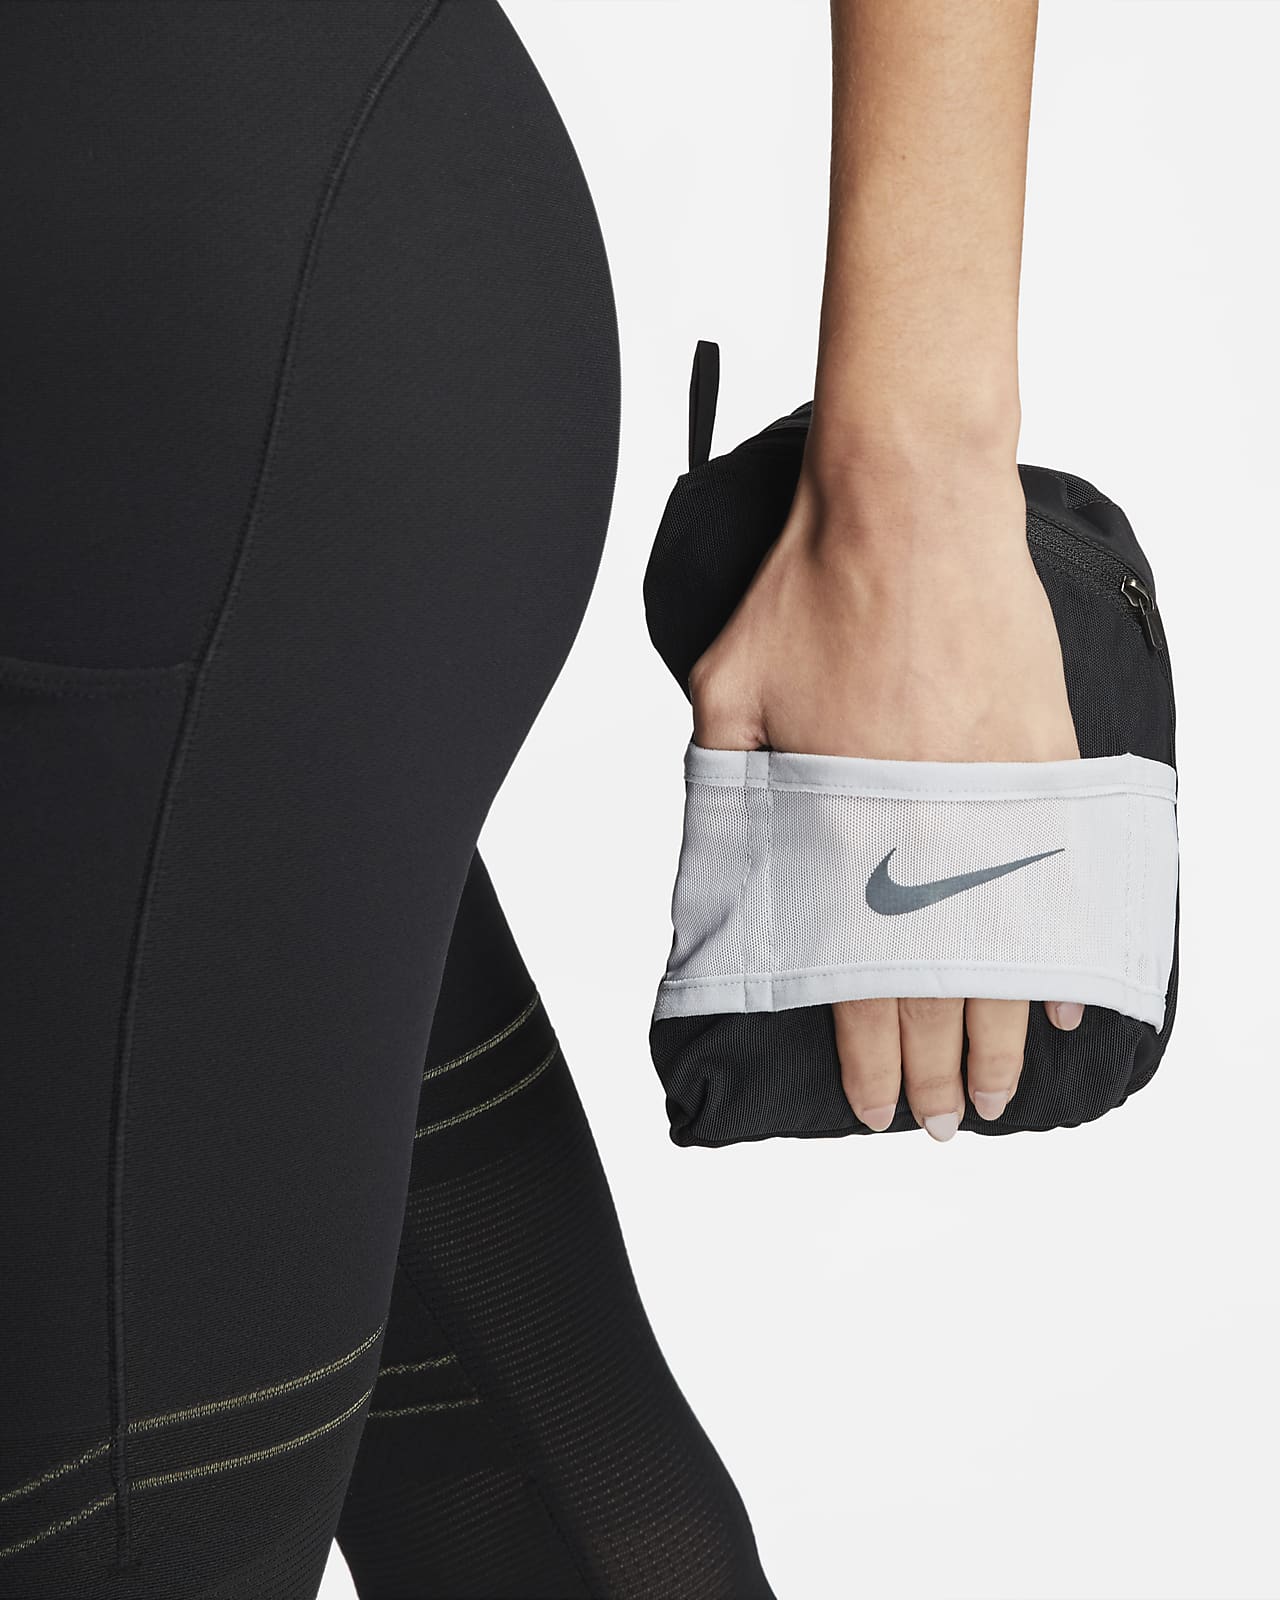 Pants y Chamarra de Entrenamiento Nike para Mujer